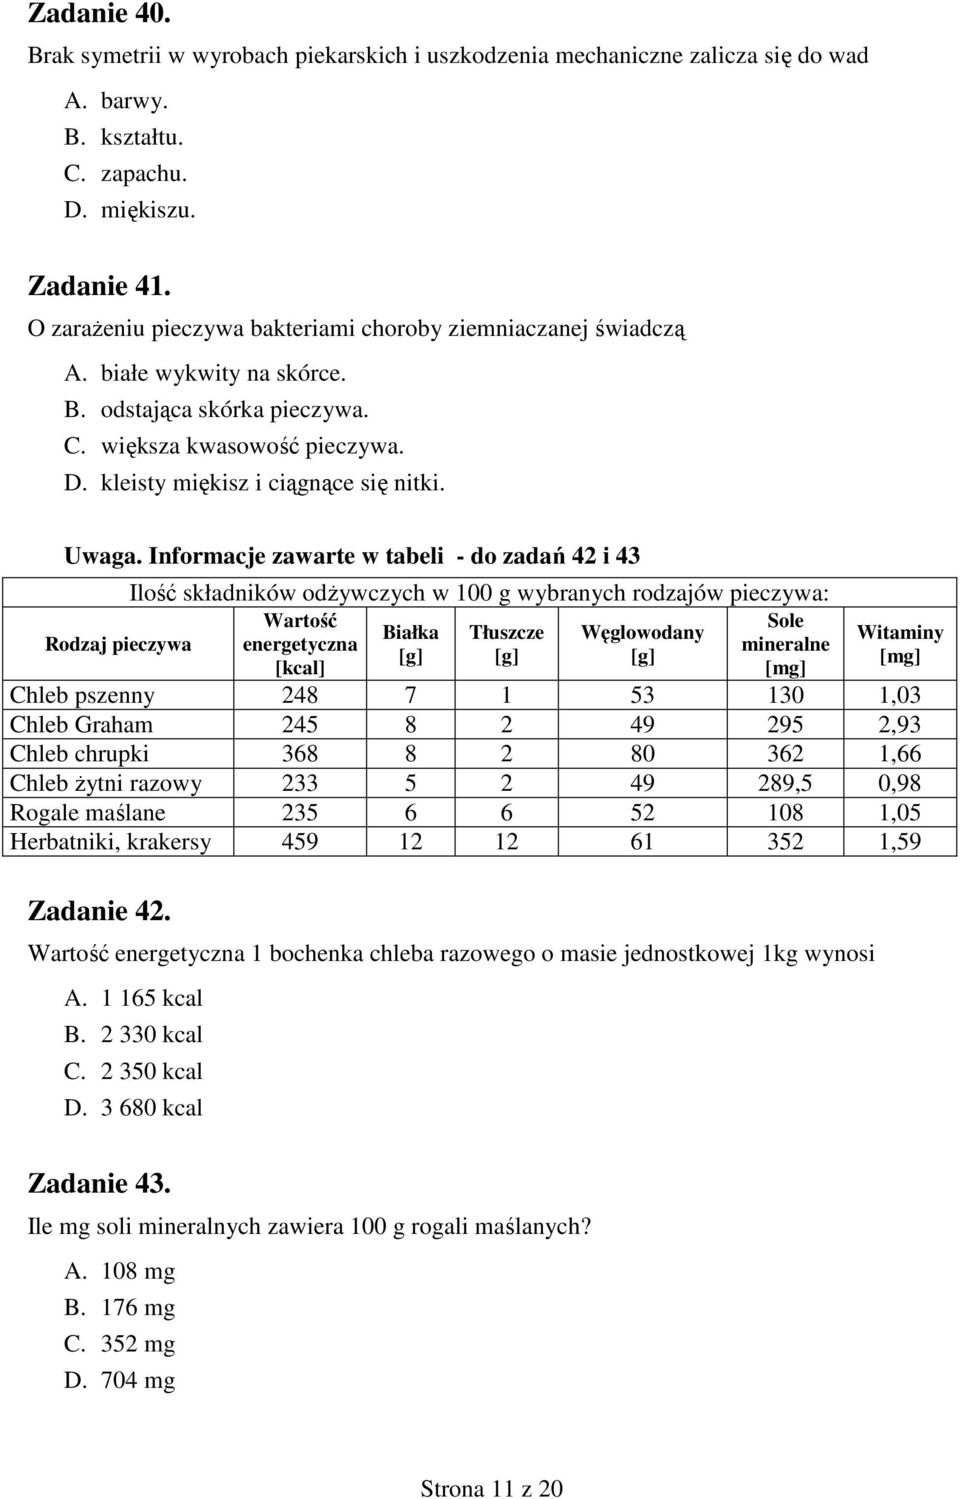 Informacje zawarte w tabeli do zadań 42 i 43 Rodzaj pieczywa Ilość składników odŝywczych w 100 g wybranych rodzajów pieczywa: Wartość energetyczna [kcal] Białka [g] Tłuszcze [g] Węglowodany [g] Sole